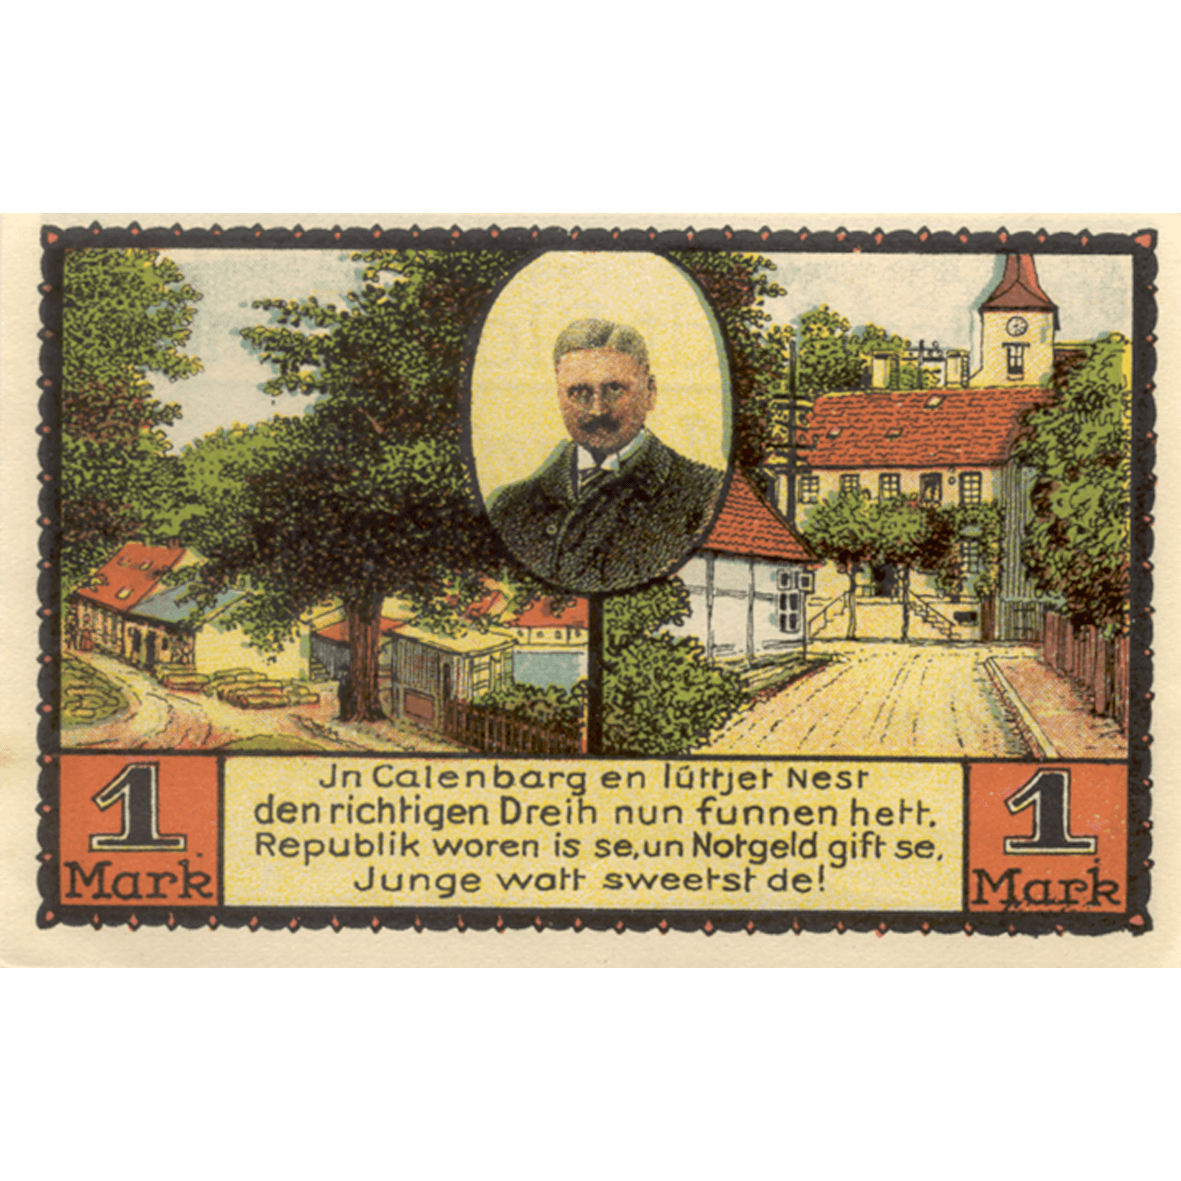 Deutsches Reich, Weimarer Republik, Stadt Eldagsen, Notgeldschein zu 25 Pfennig 1921 (reverse)